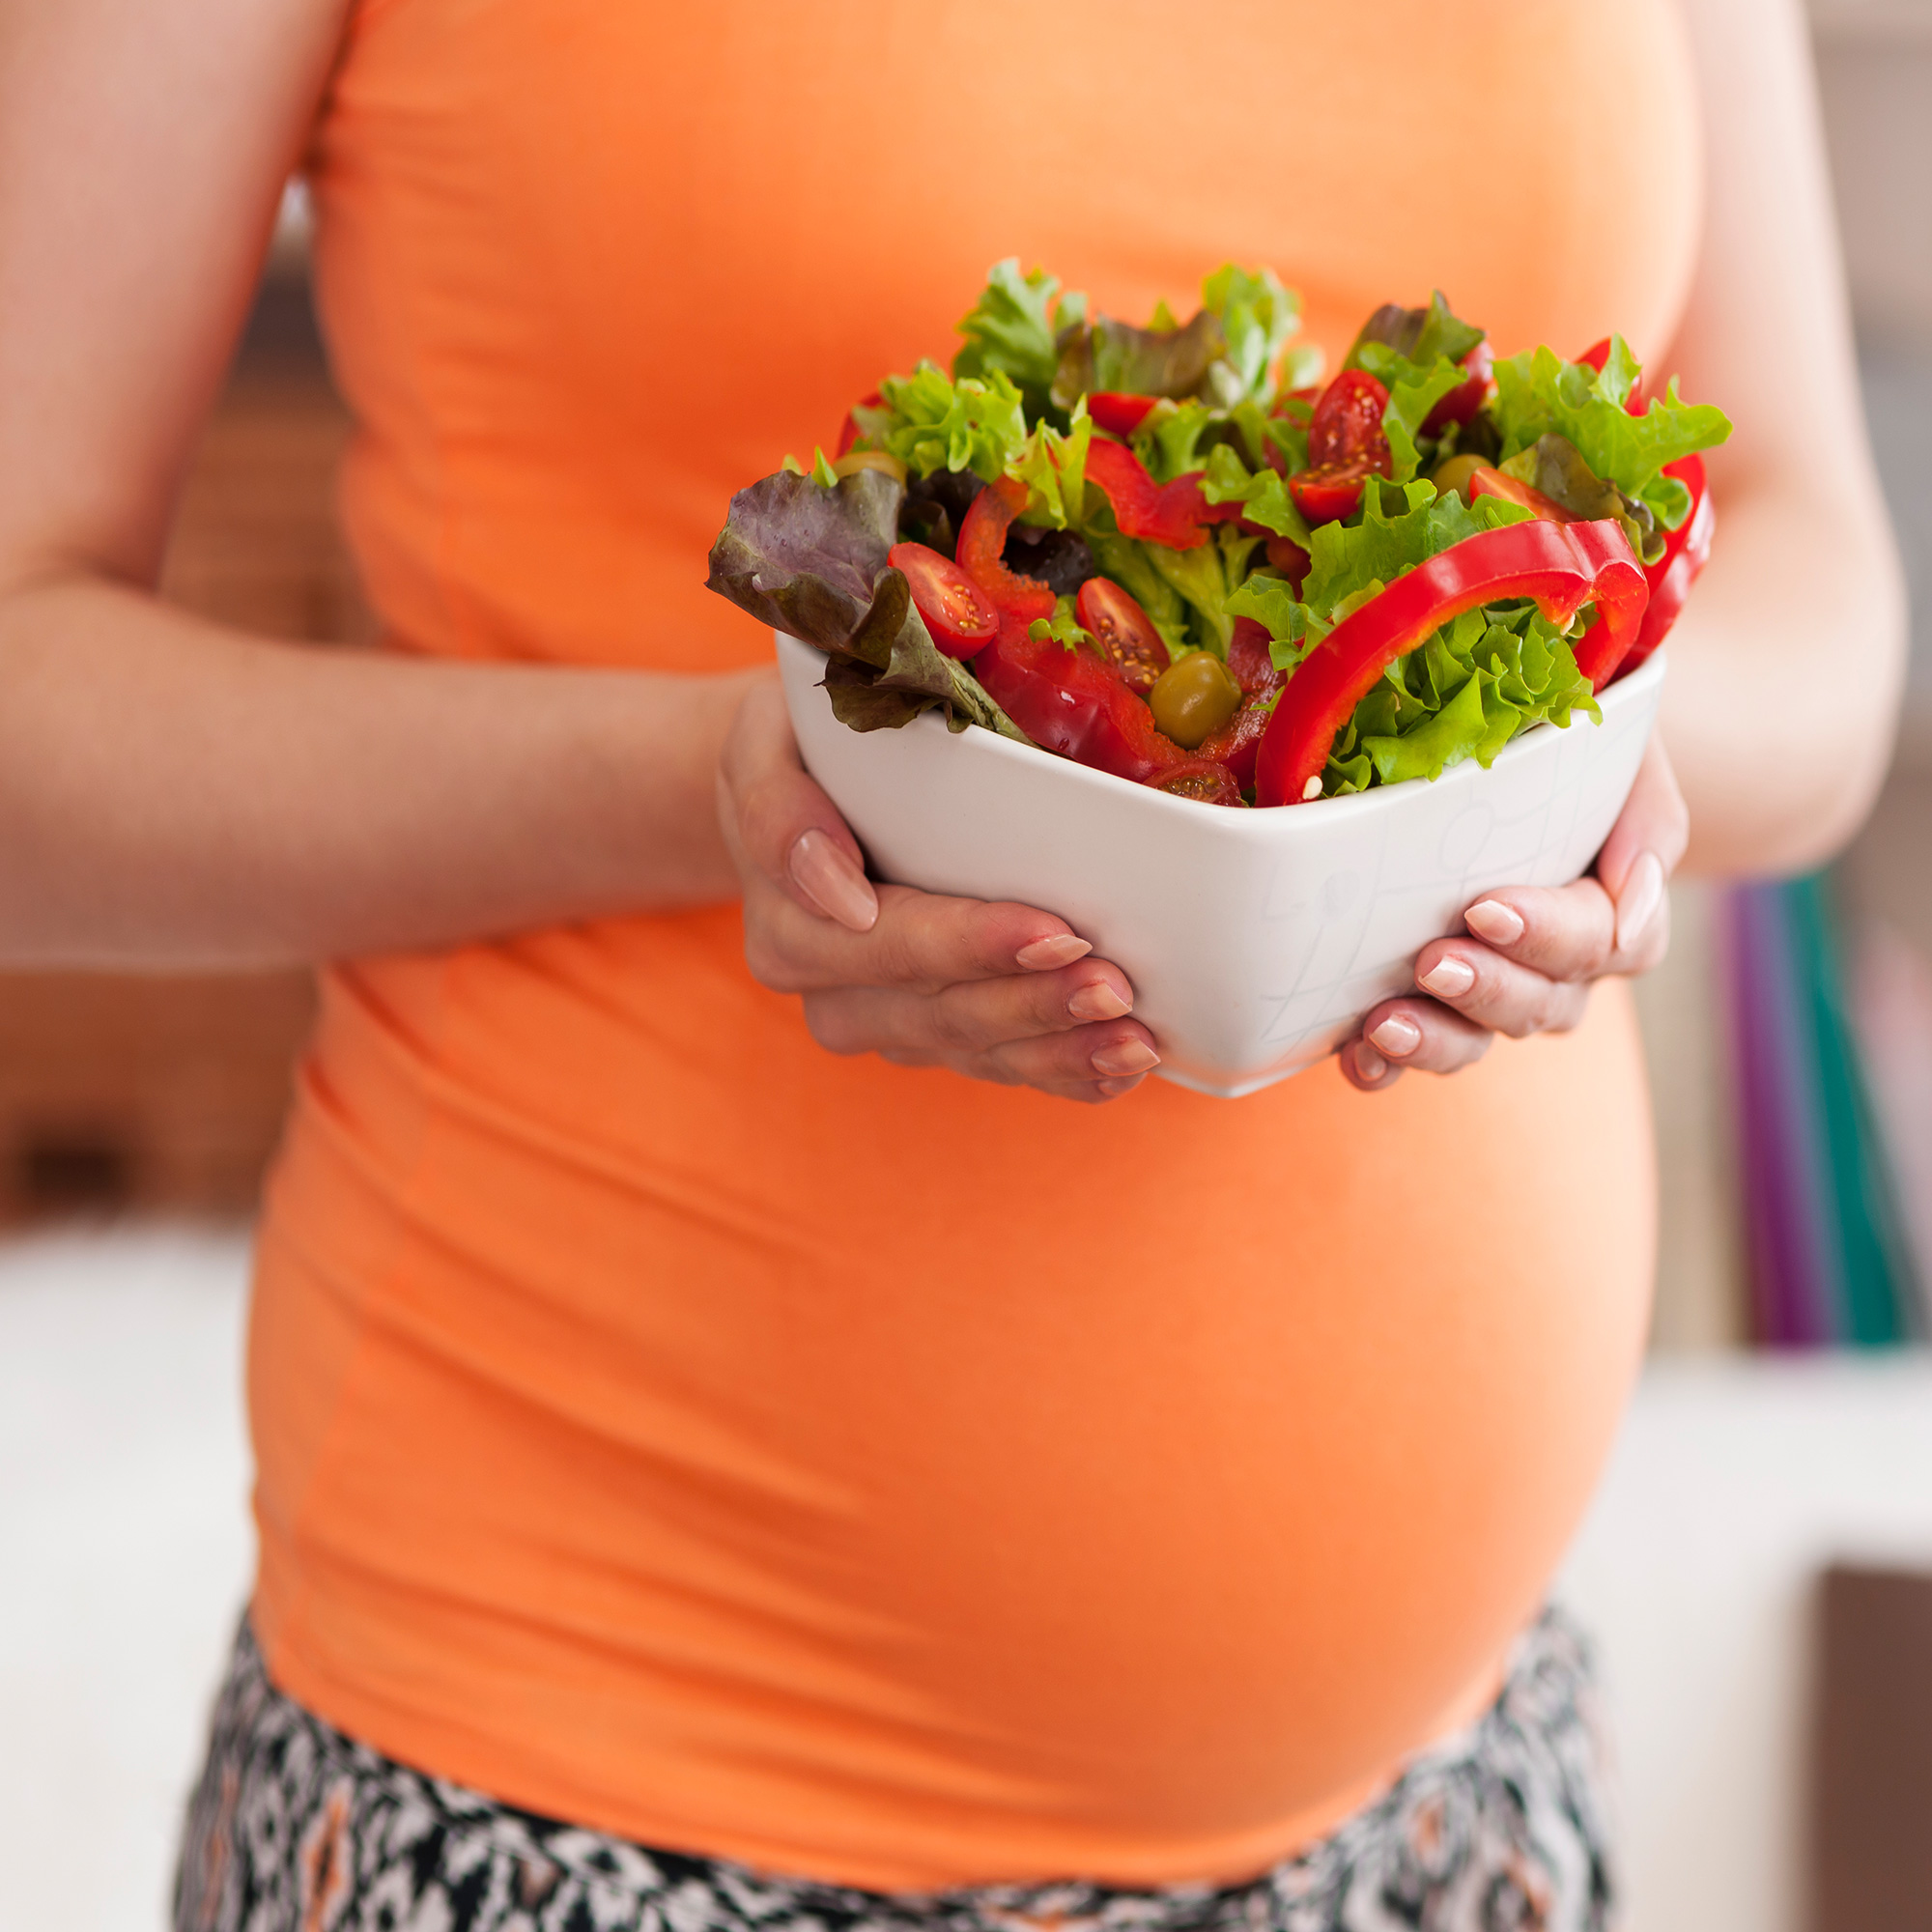 تاثیر تغذیه در دوران بارداری